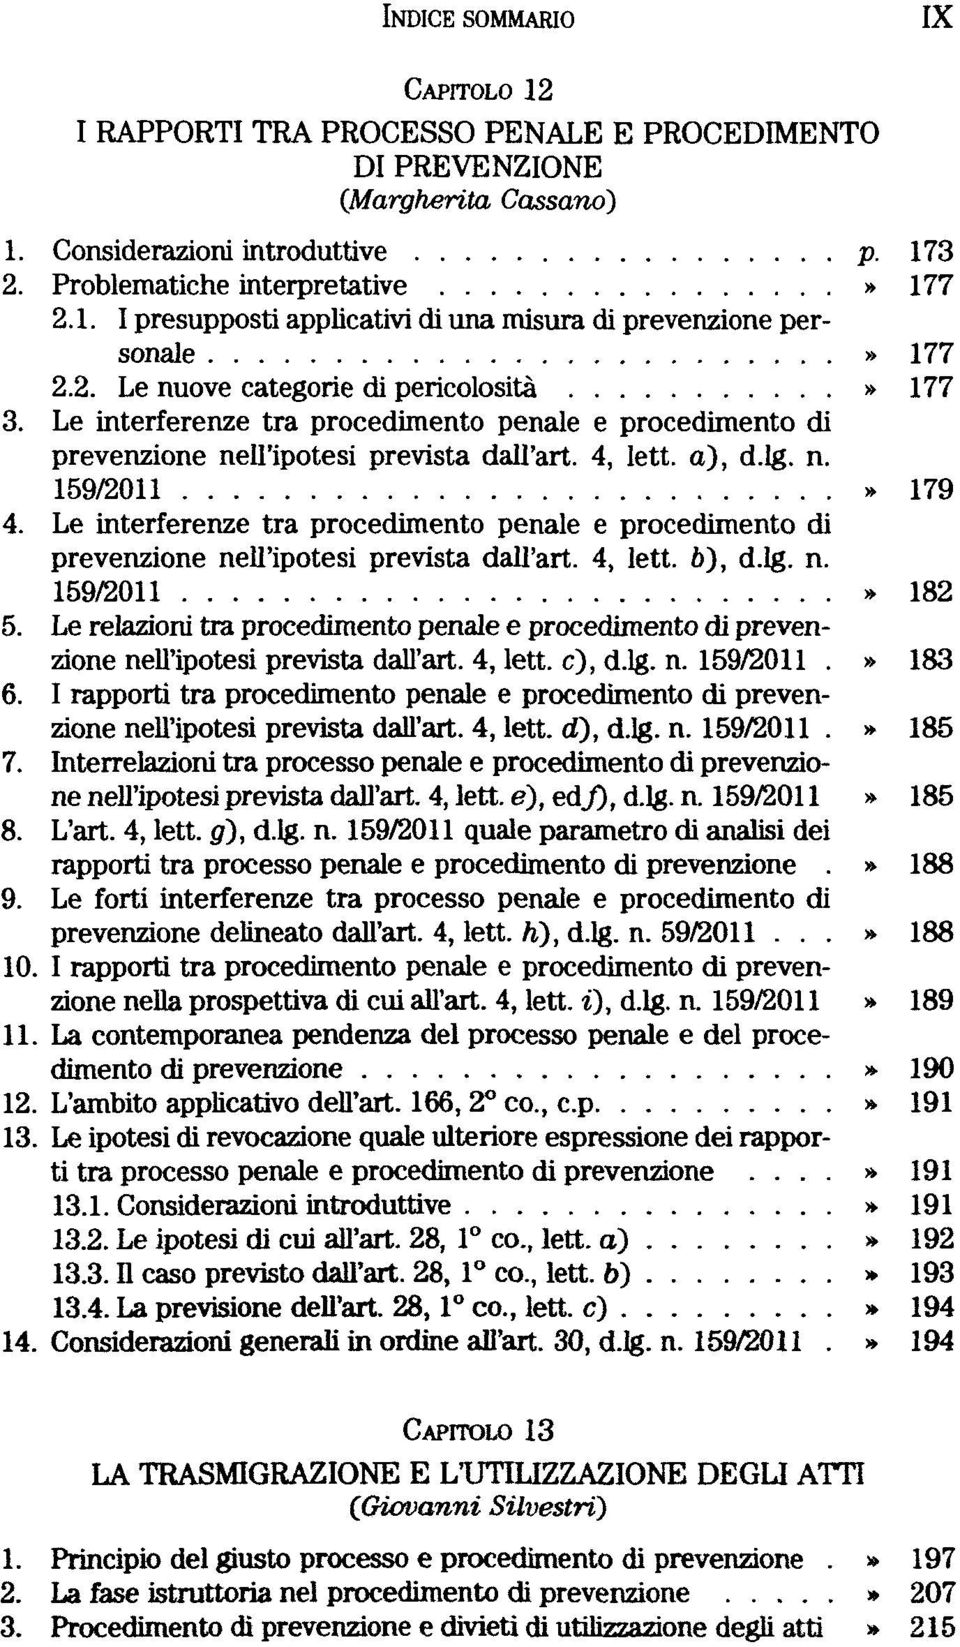 Le interferenze tra procedimento penale e procedimento di prevenzione nell'ipotesi prevista dall'art. 4, lett. b), d.lg. n.» 182 5.